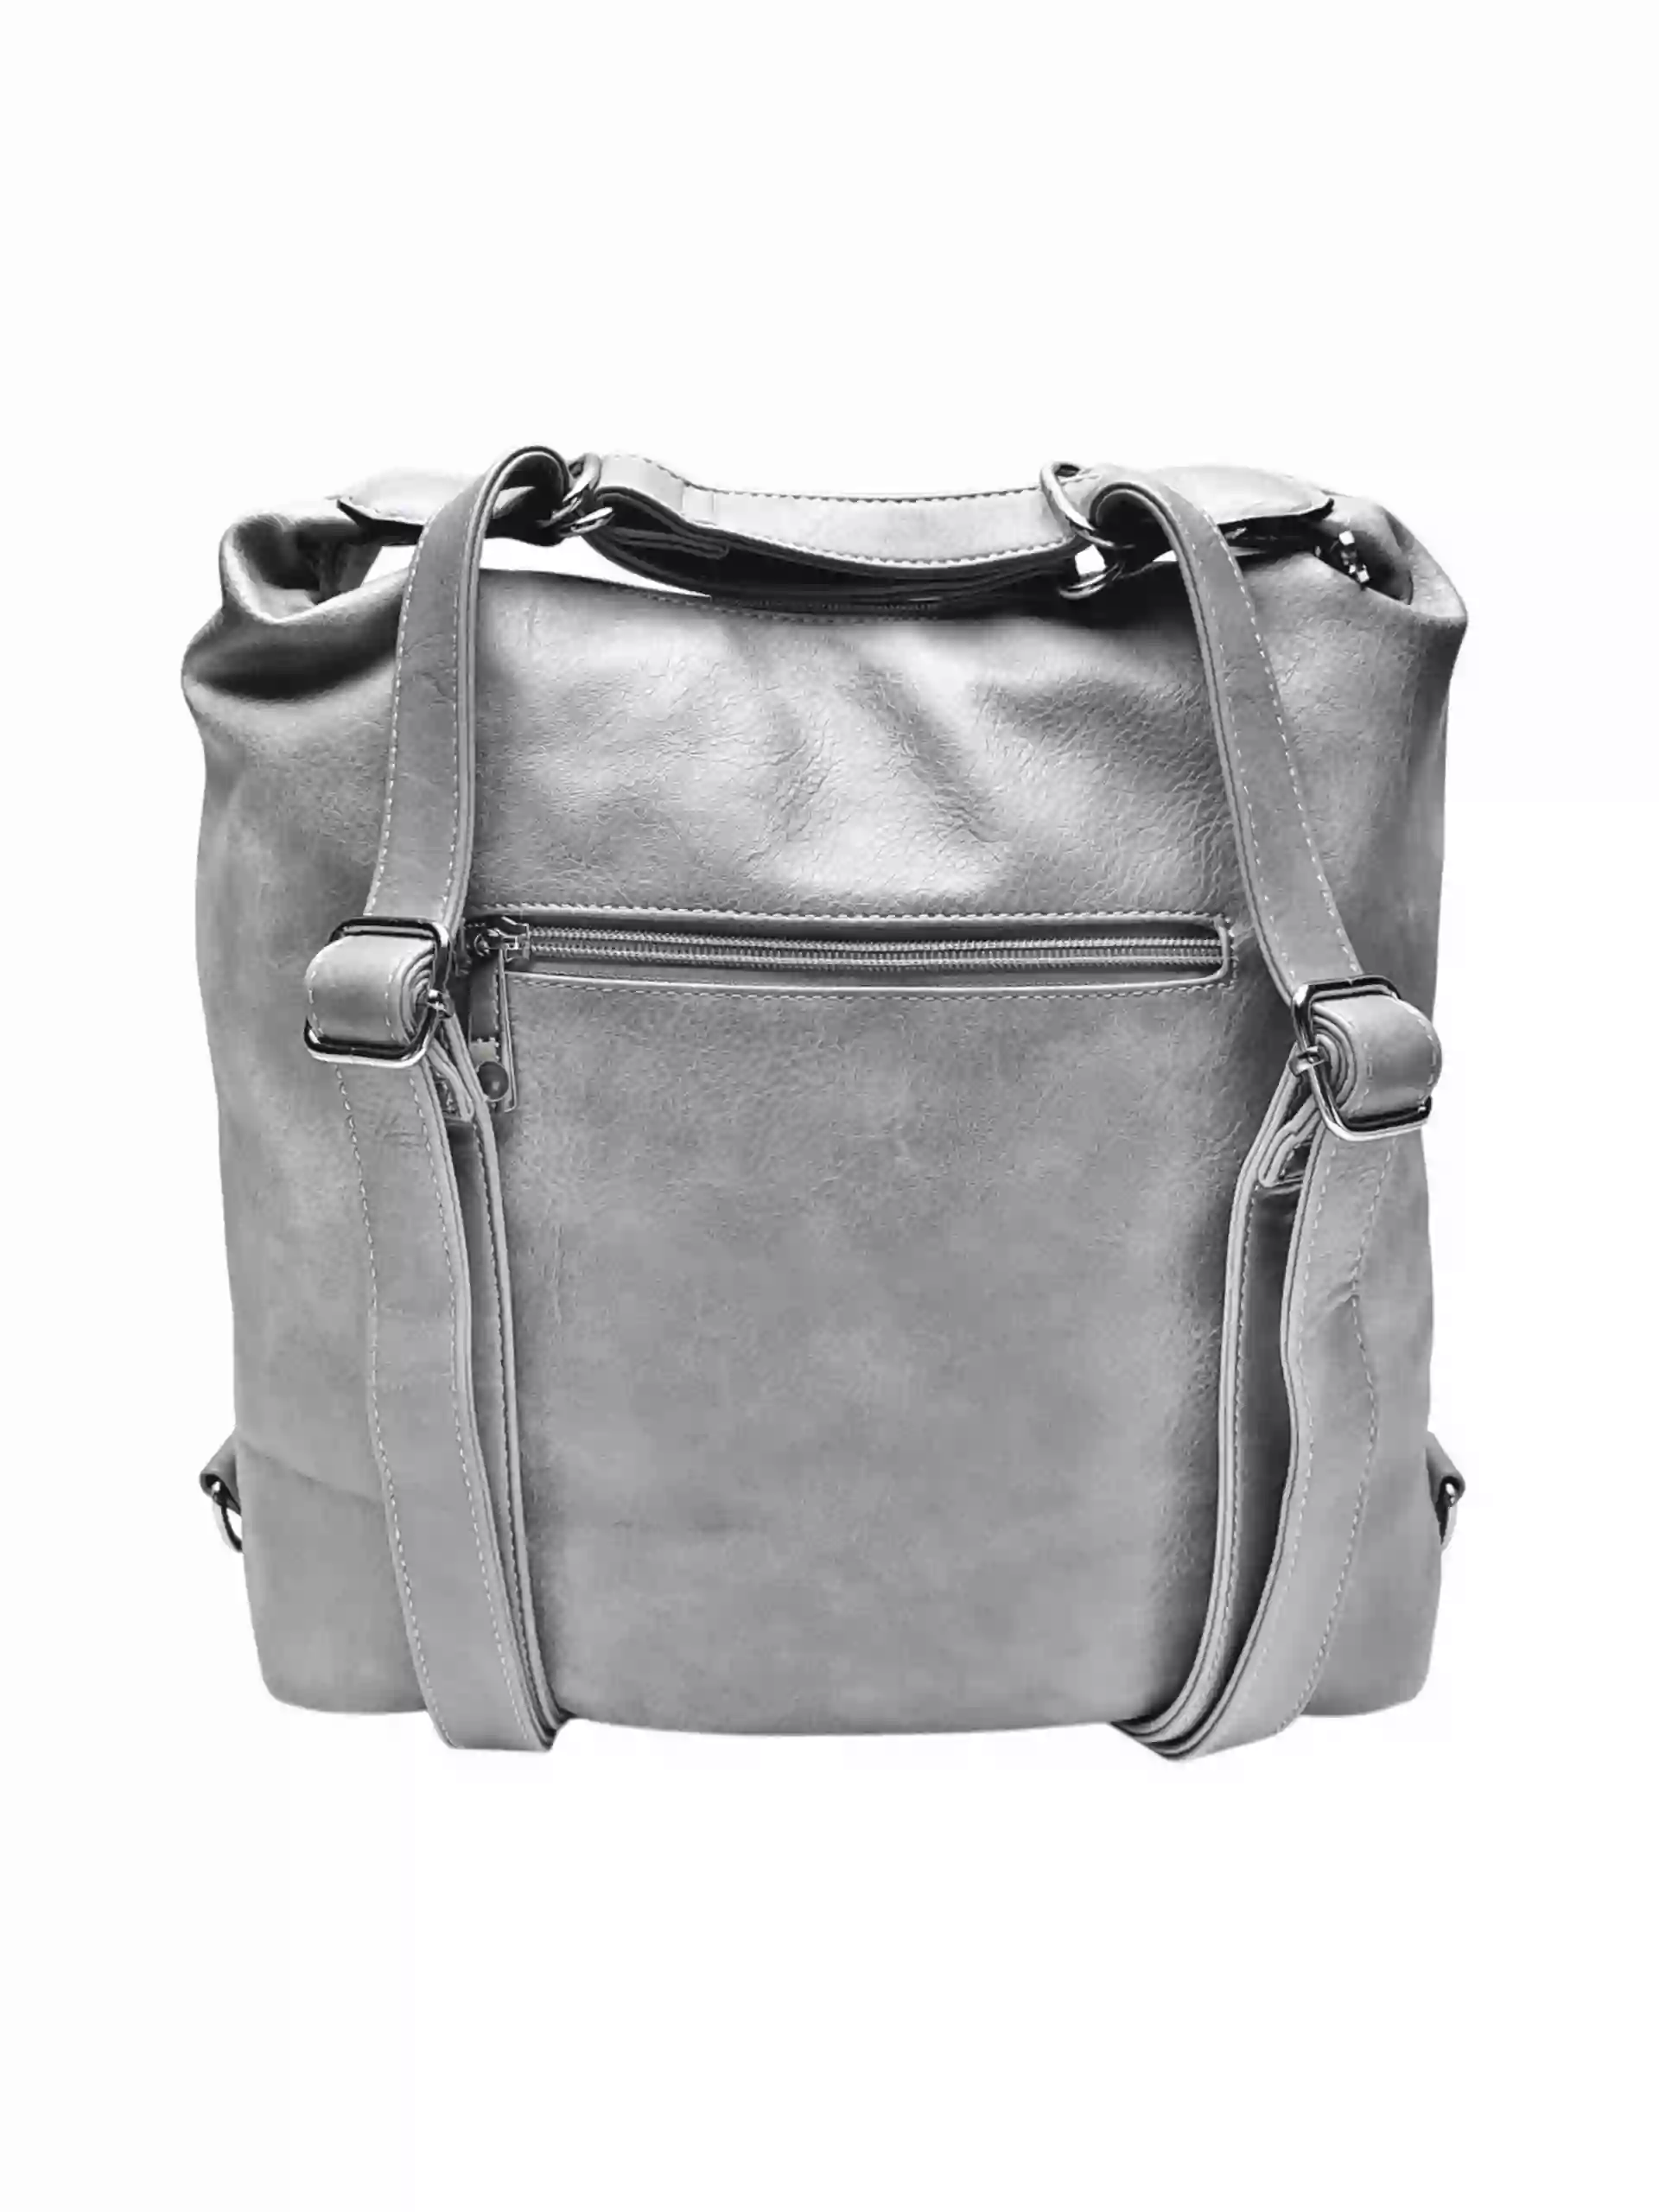 Moderní světle šedý kabelko-batoh z eko kůže, Tapple, H190010, zadní strana kabelko-batohu 2v1 s popruhy